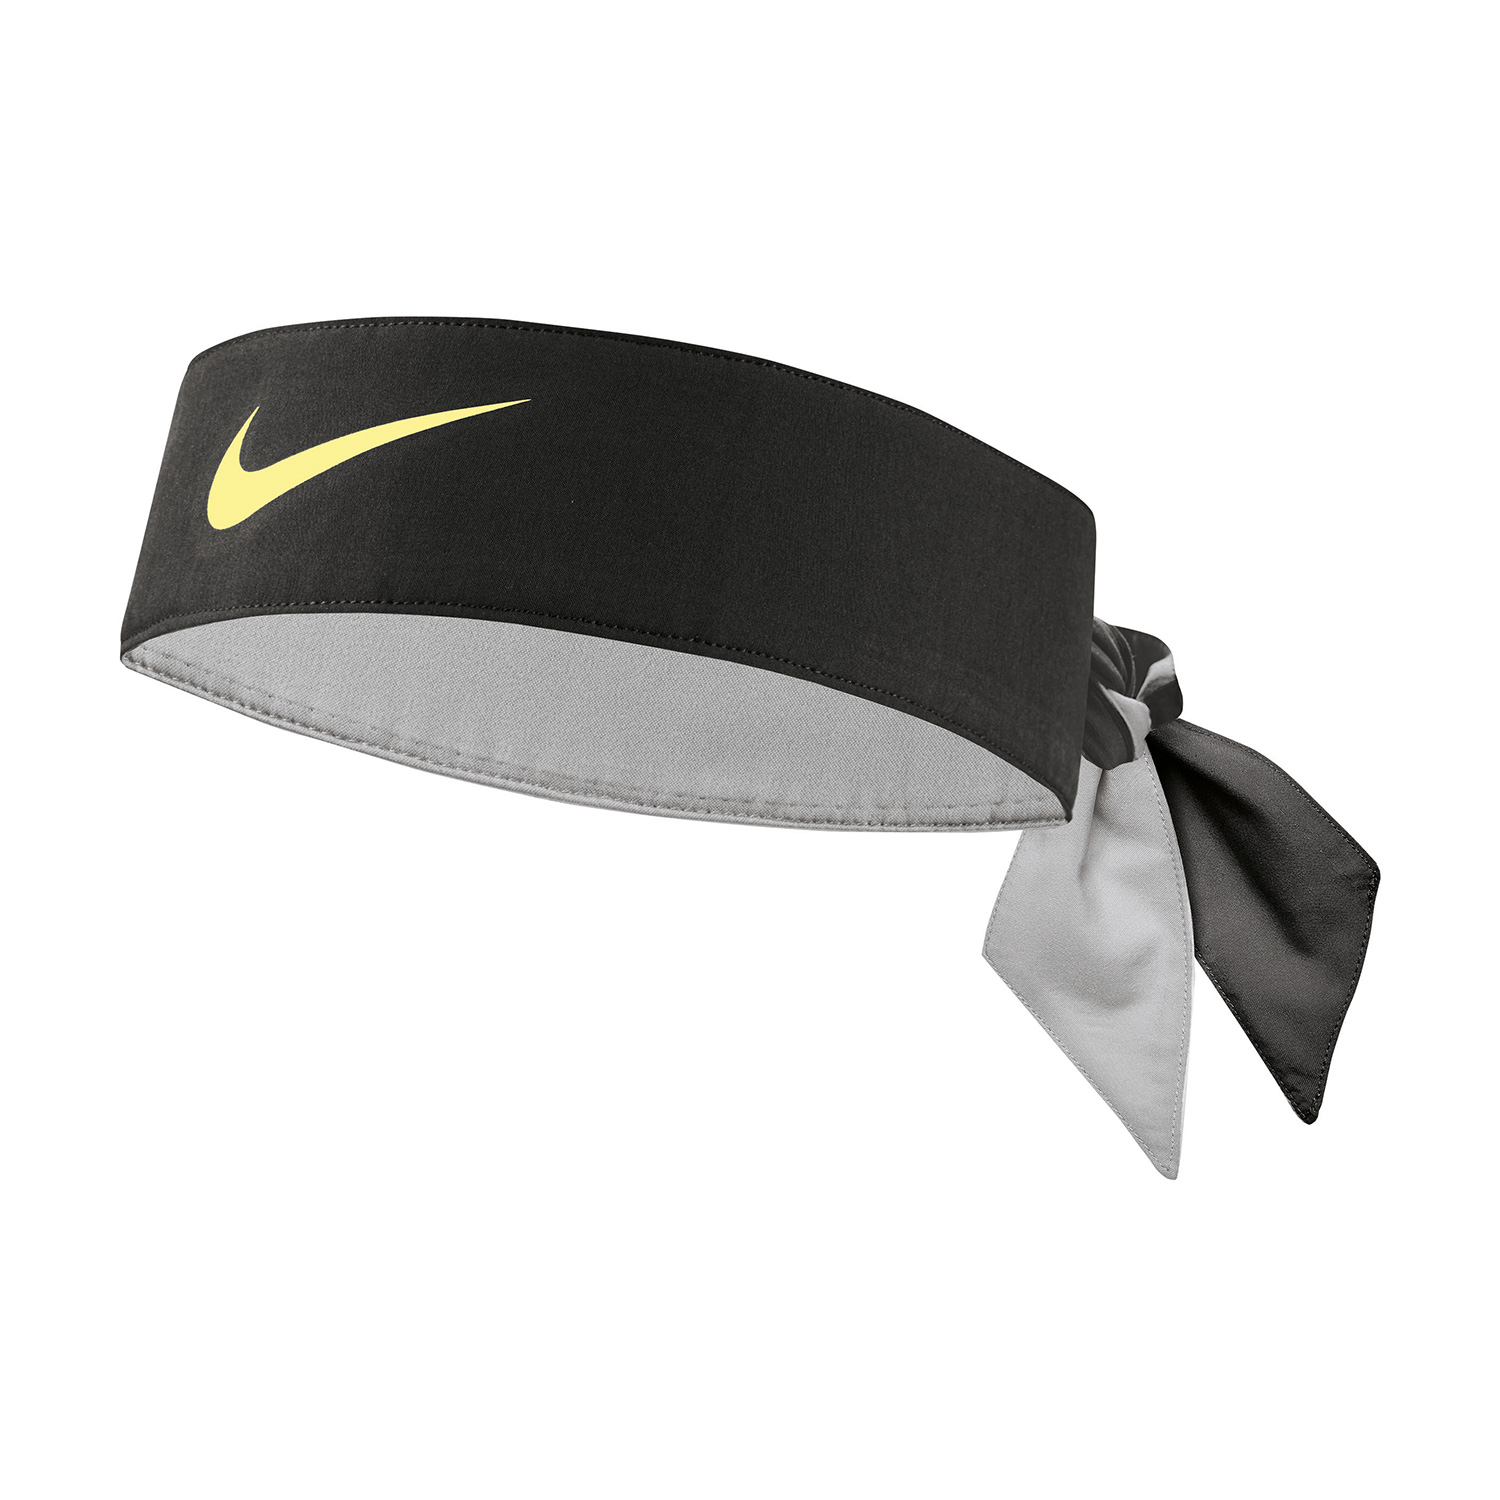 Nike Dry Headband - Black/Light Lemon Twist